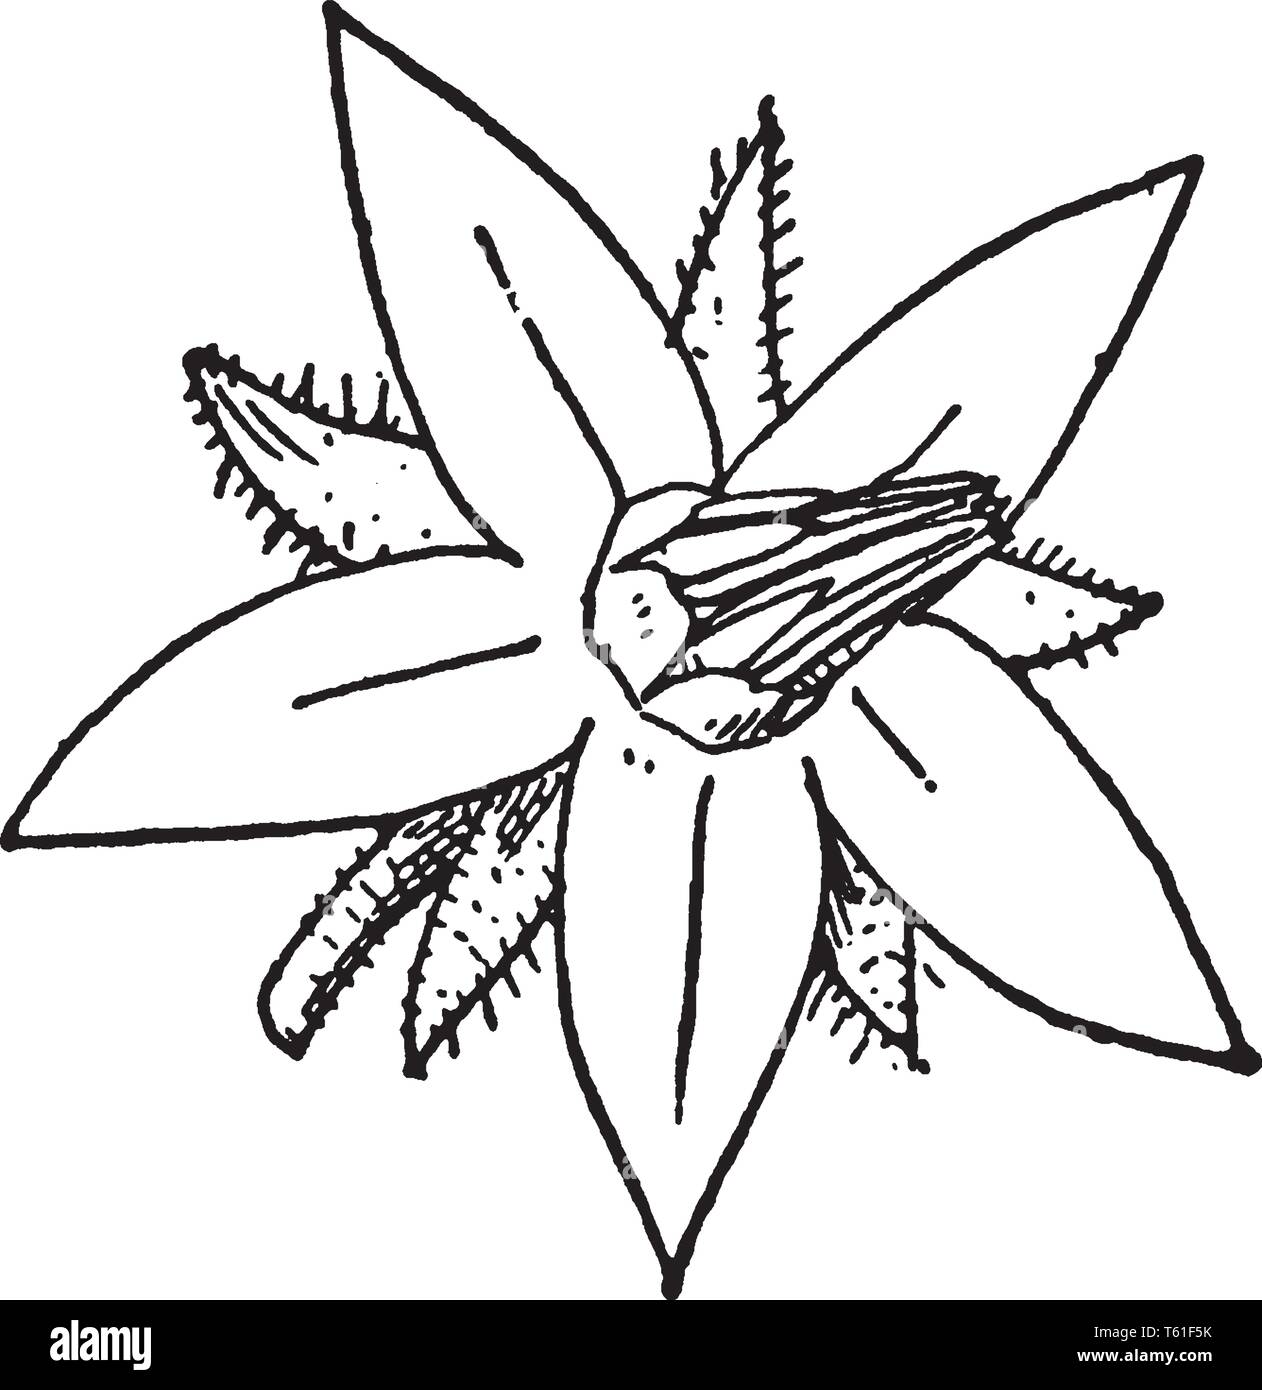 Questo è un fiore di borragine. Si tratta di una pianta flowering. I fiori sono blu, rosa o bianco con petali stretti, vintage disegno della linea o incisione illustratio Illustrazione Vettoriale